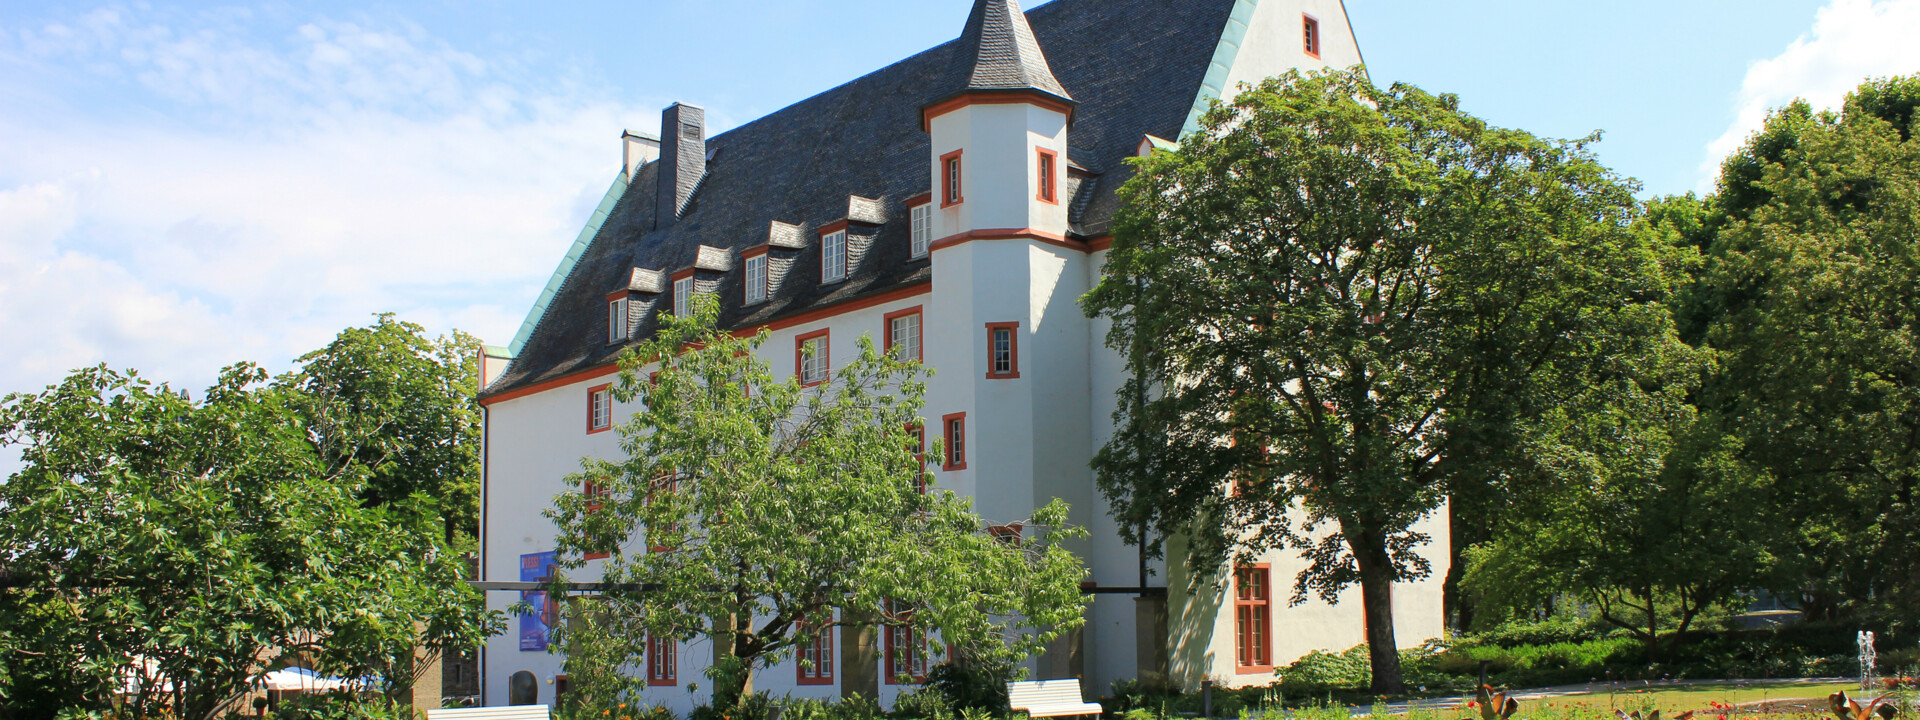 Deutschherrenhaus mit Blumenhof im Vordergrund ©Koblenz-Touristik GmbH